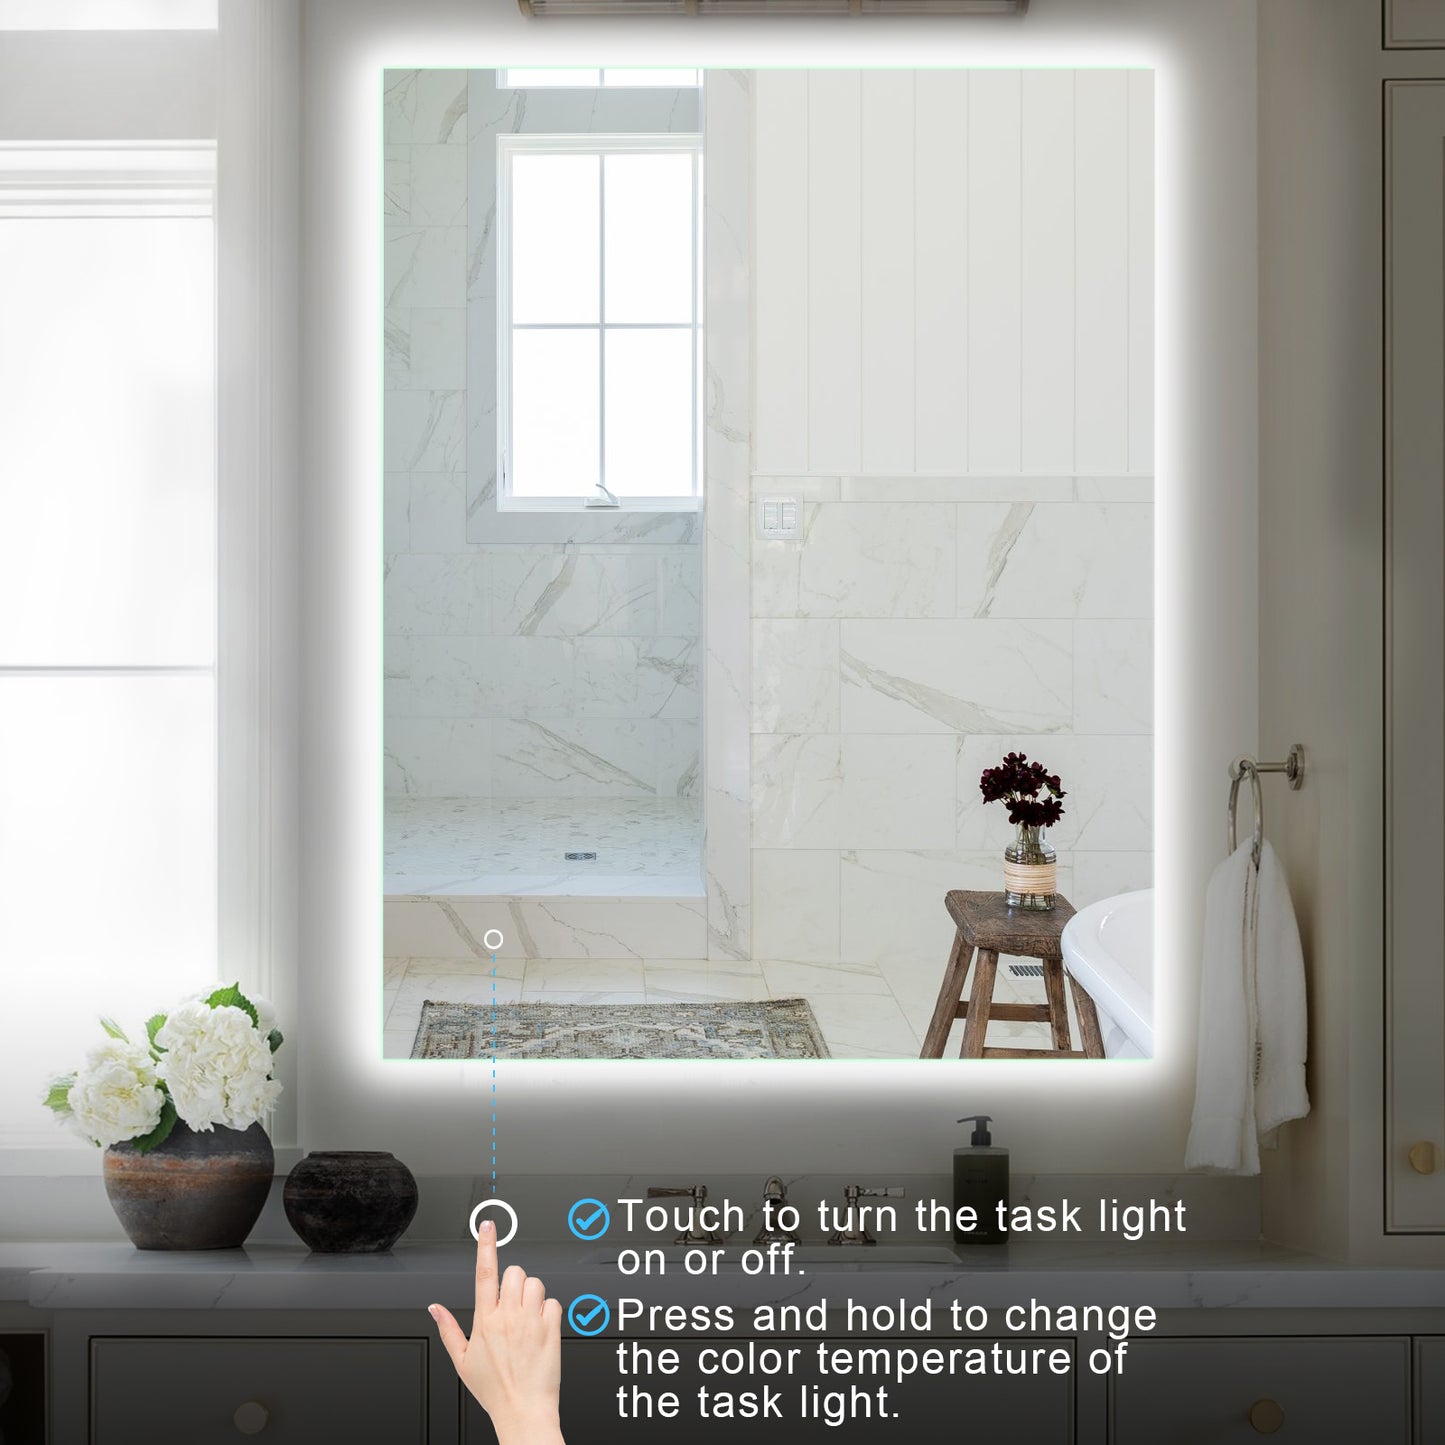 Beveled Frameless Lighted Bathroom / Vanity Mirror / Size: 28" x 36"